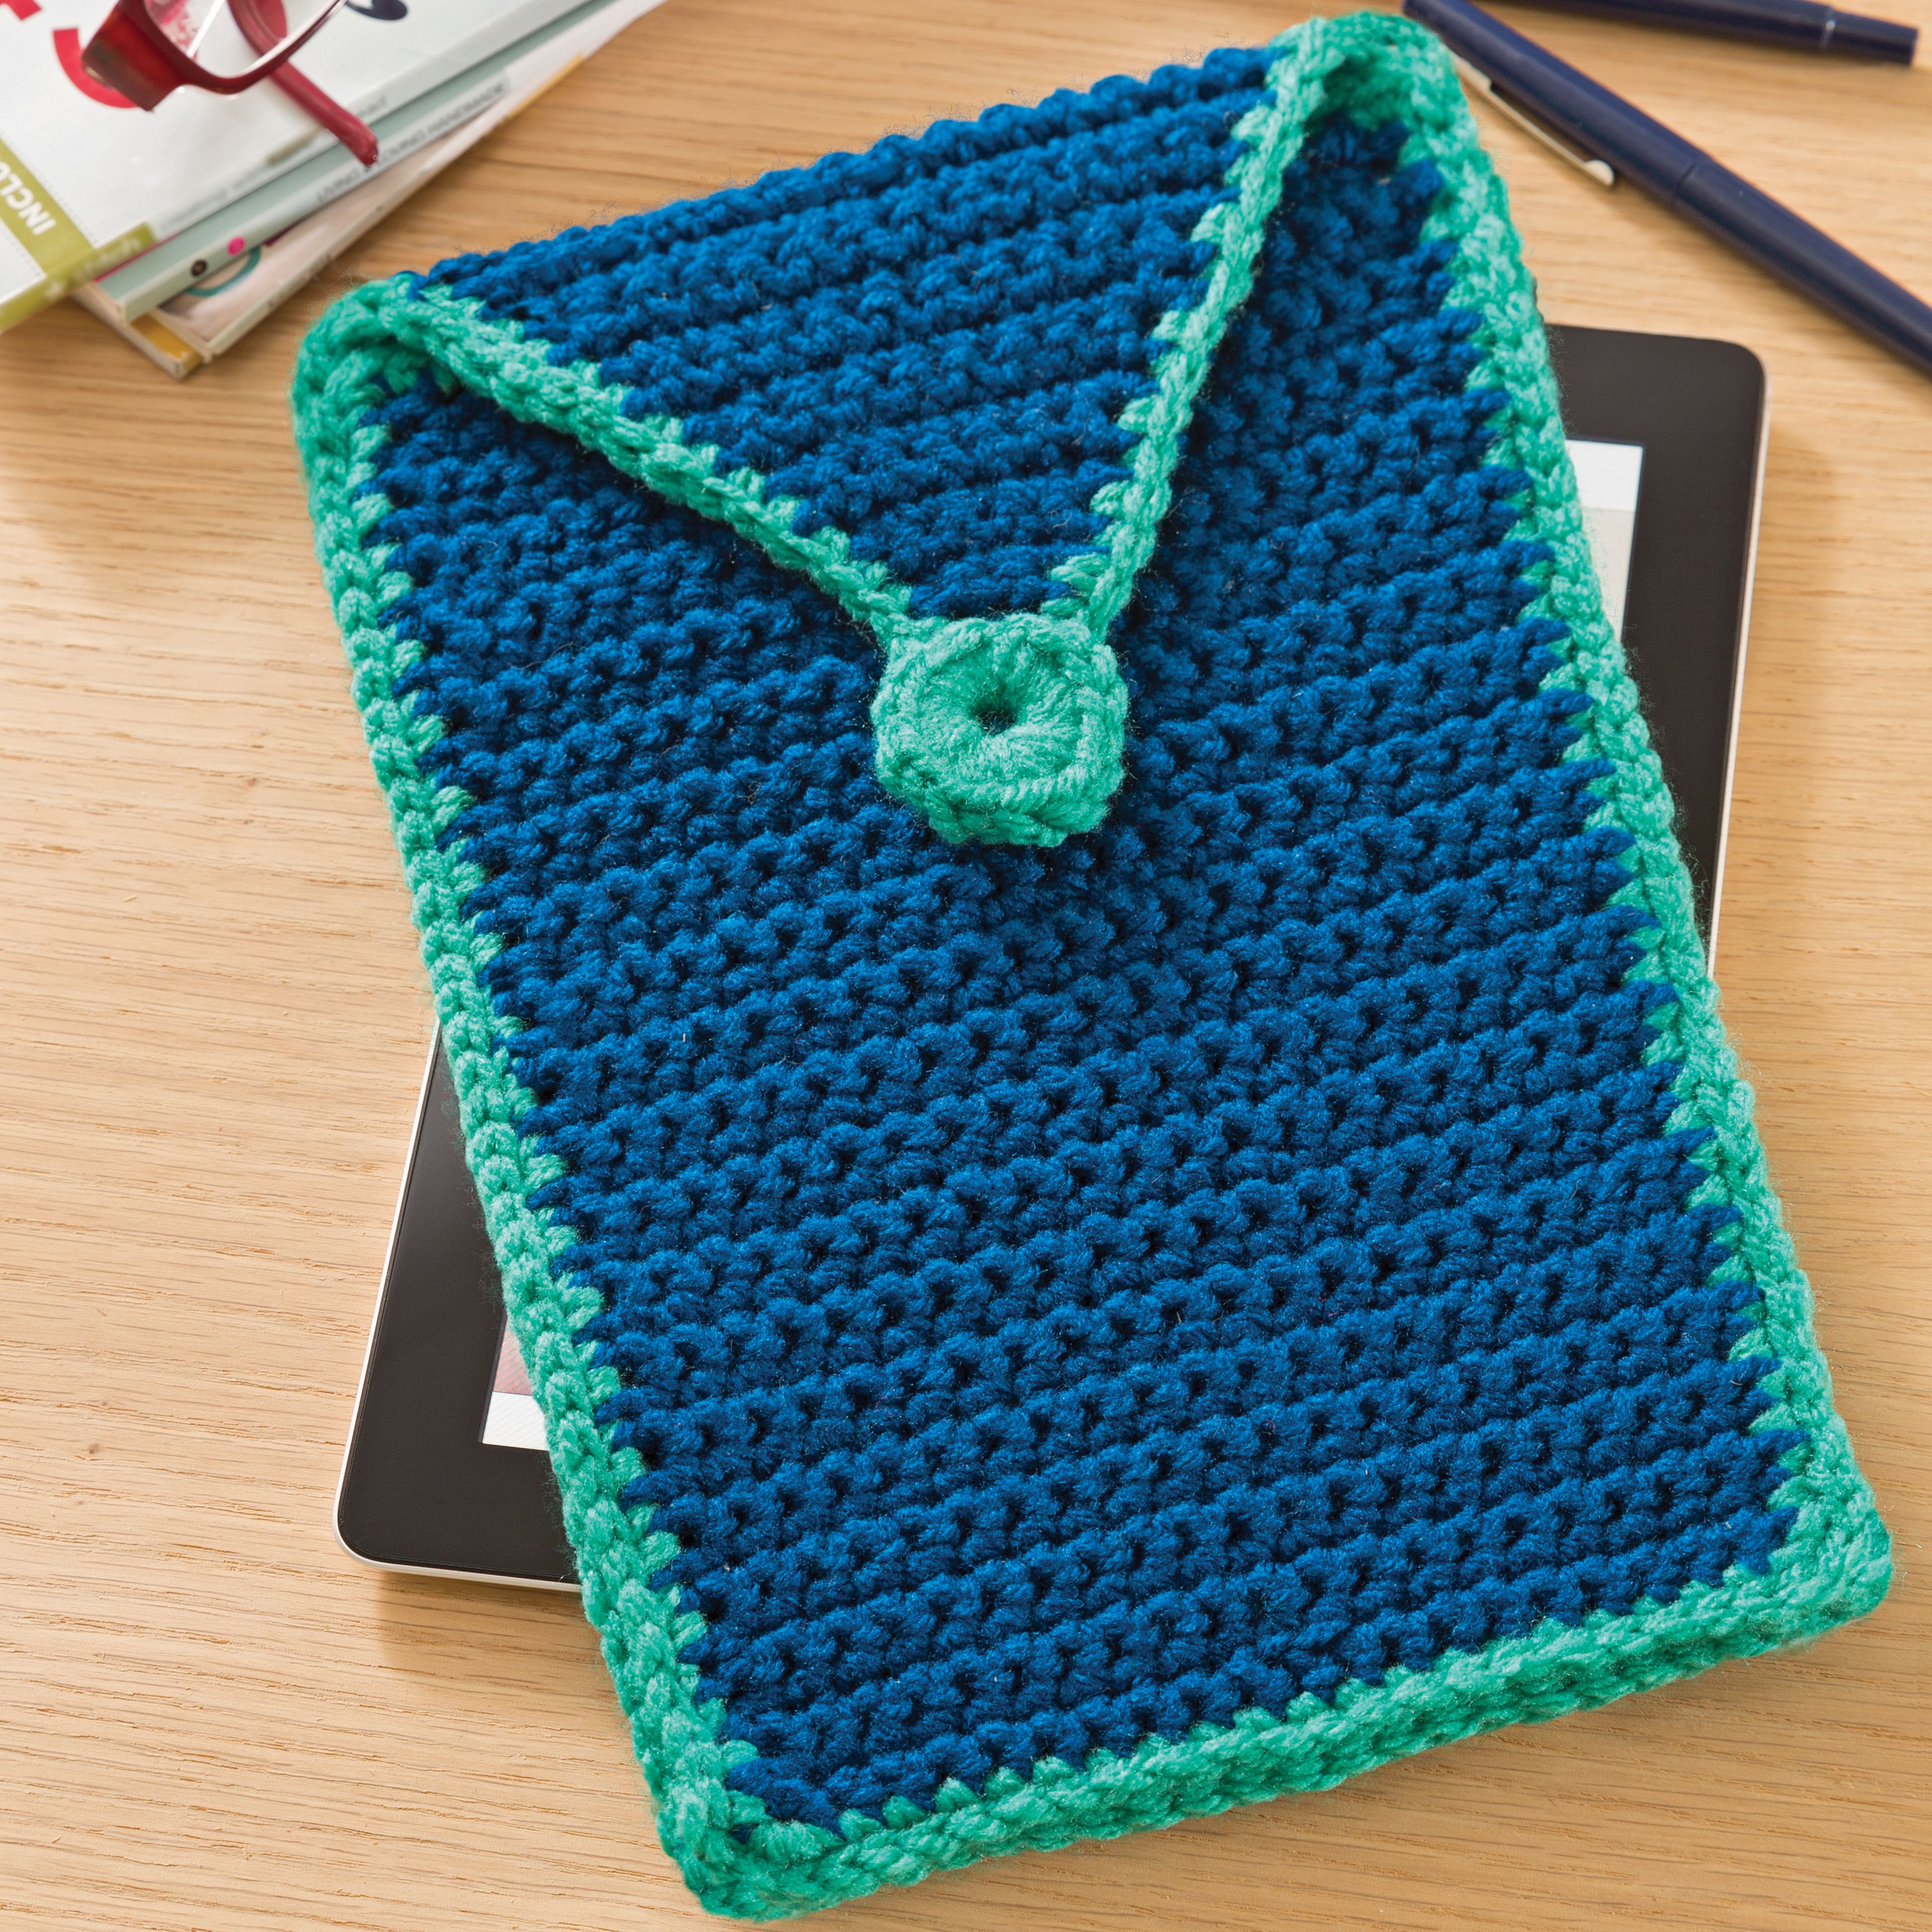 Crochet Kit (Choose a Kit) - Sam's Club